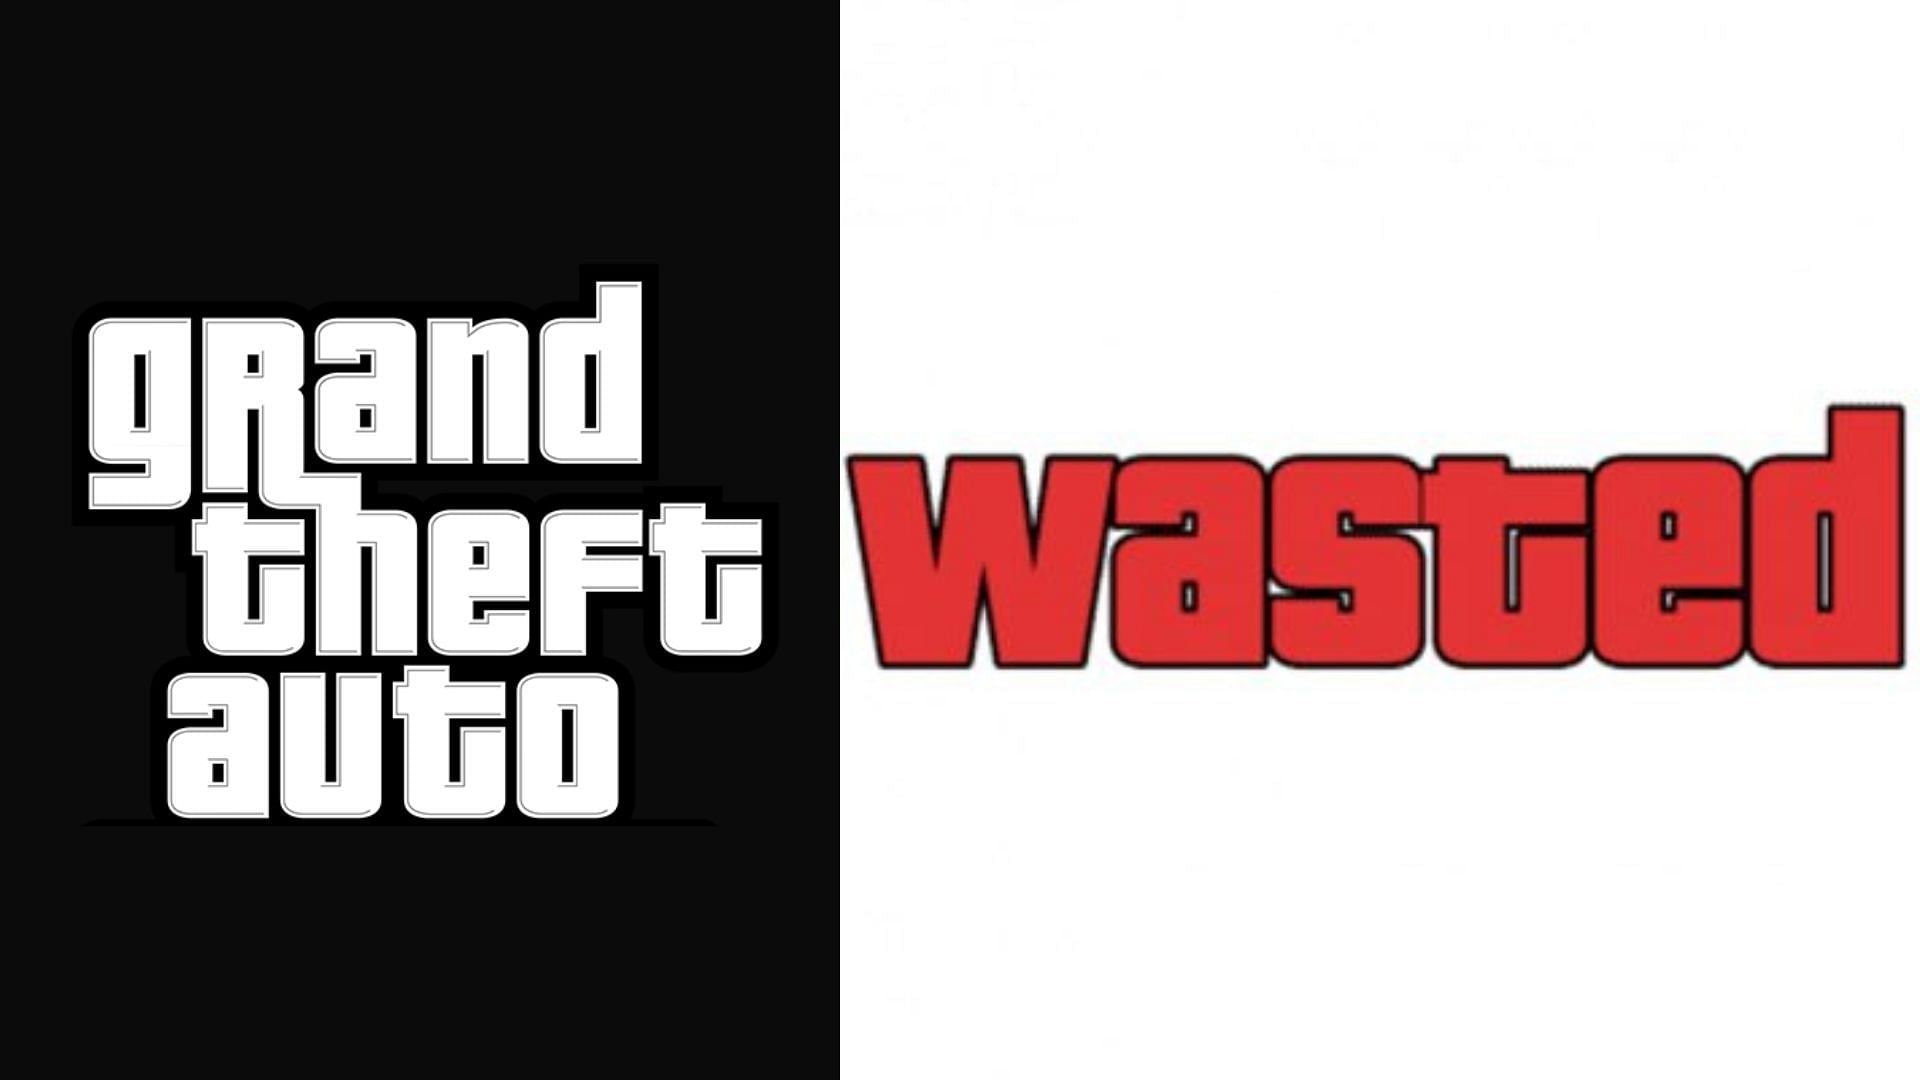 wasted logo gta